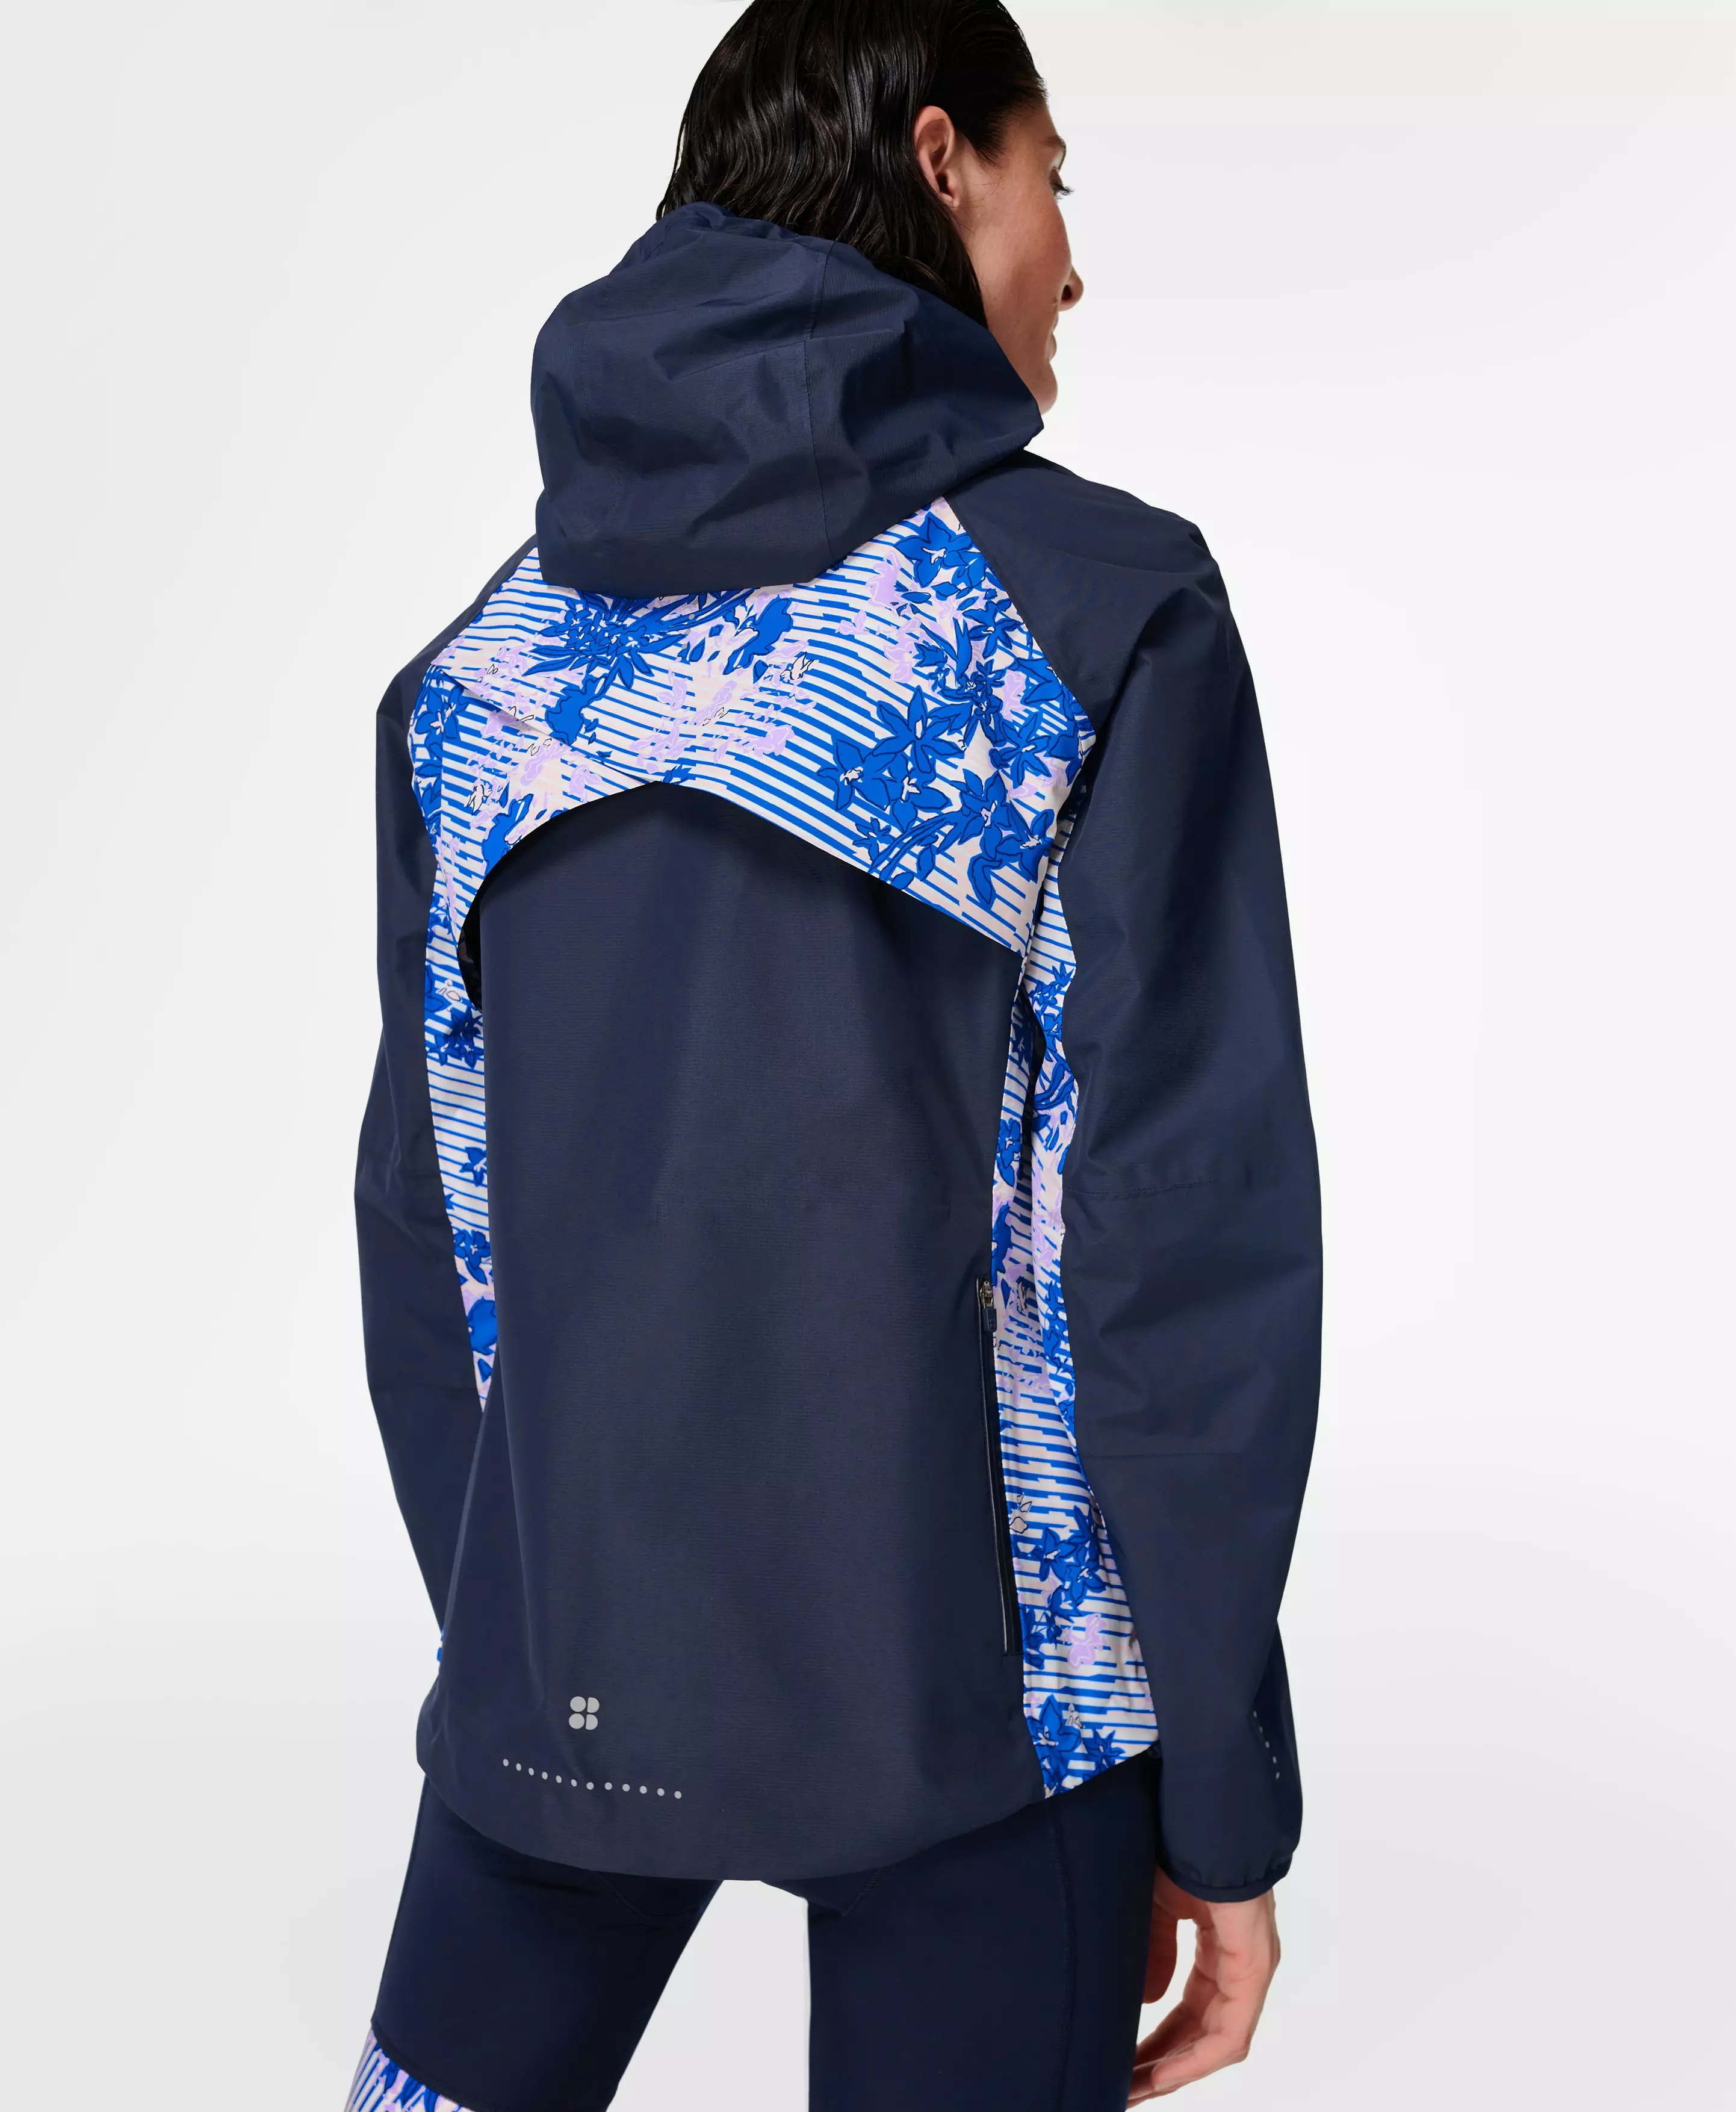 Commuter Waterproof Jacket - bluefloralgridprint | Women's & | www.sweatybetty.com